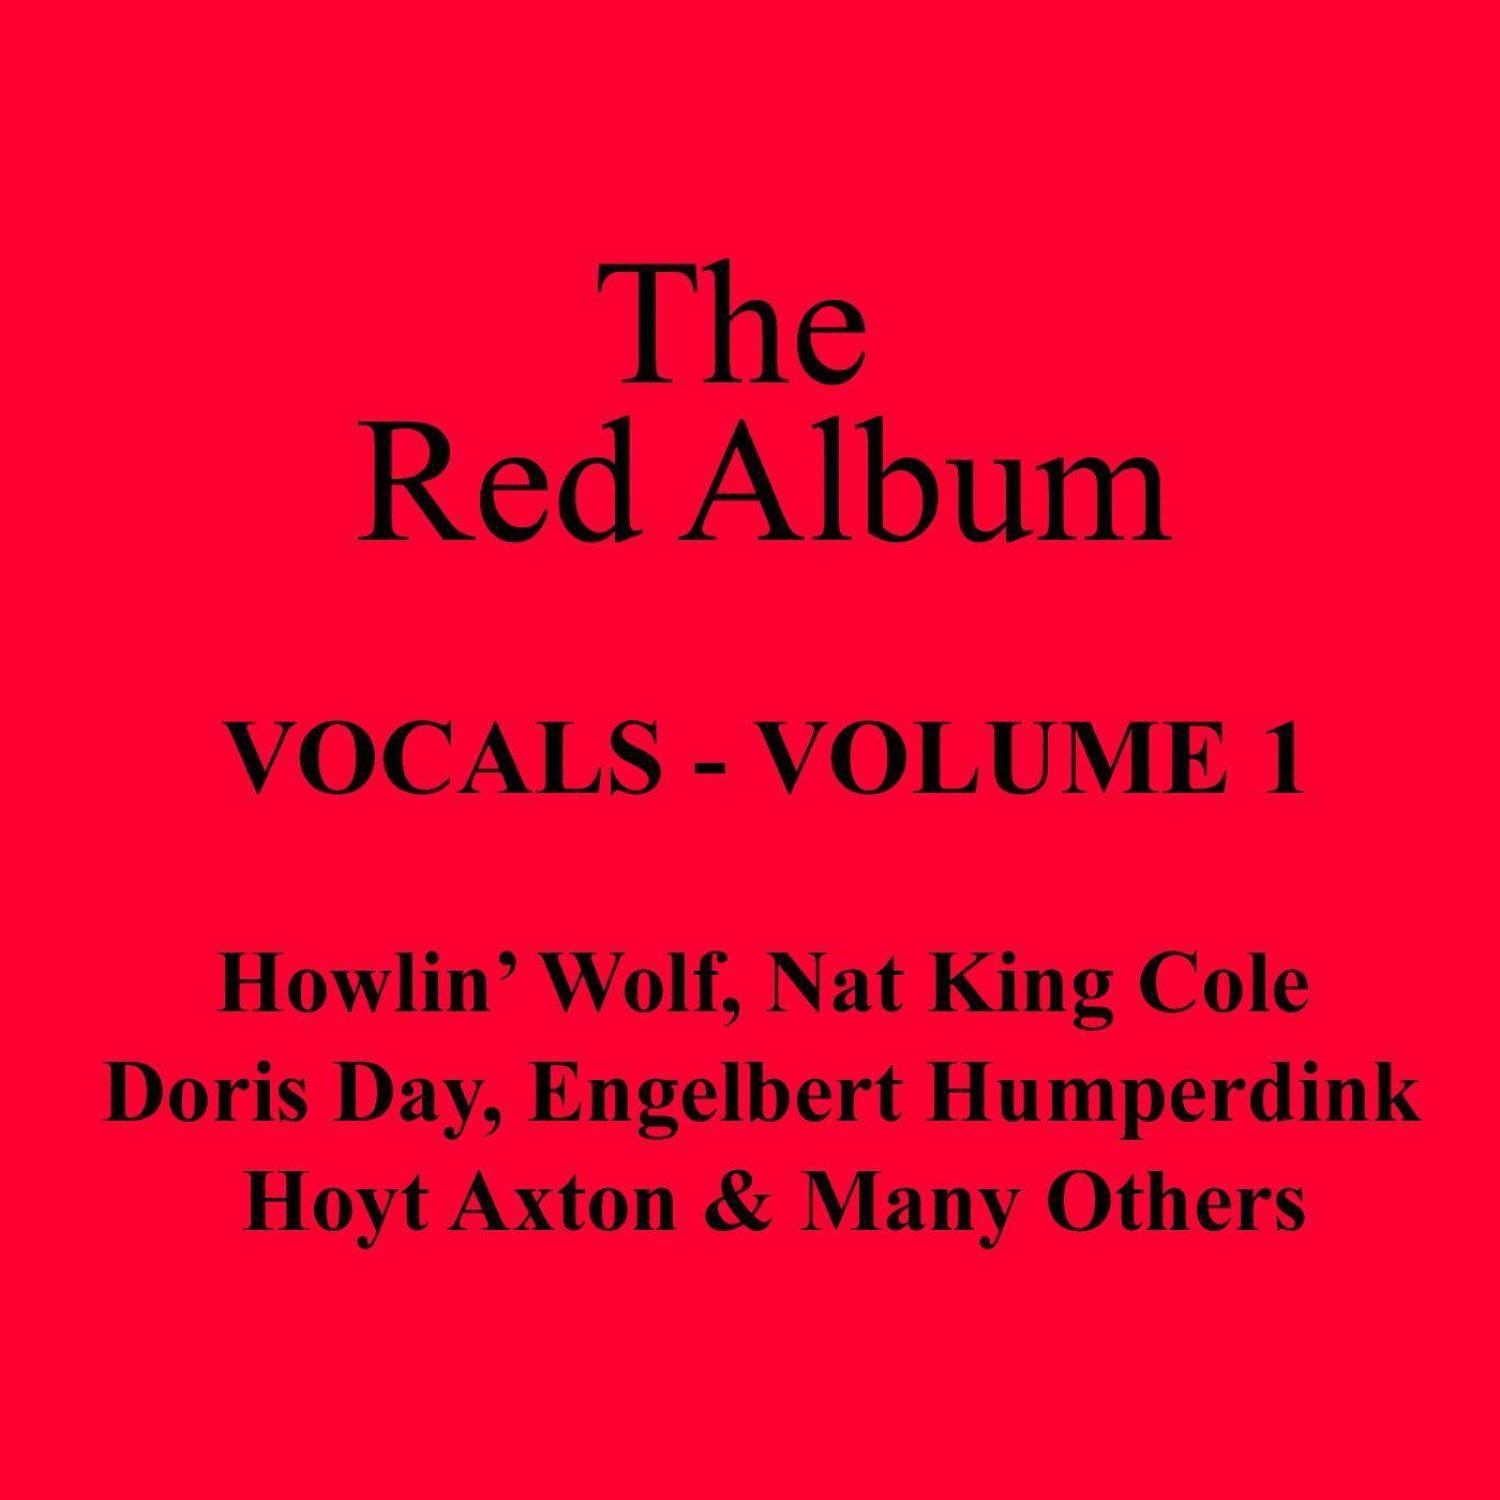 The Red Album - Vocals Vol 1